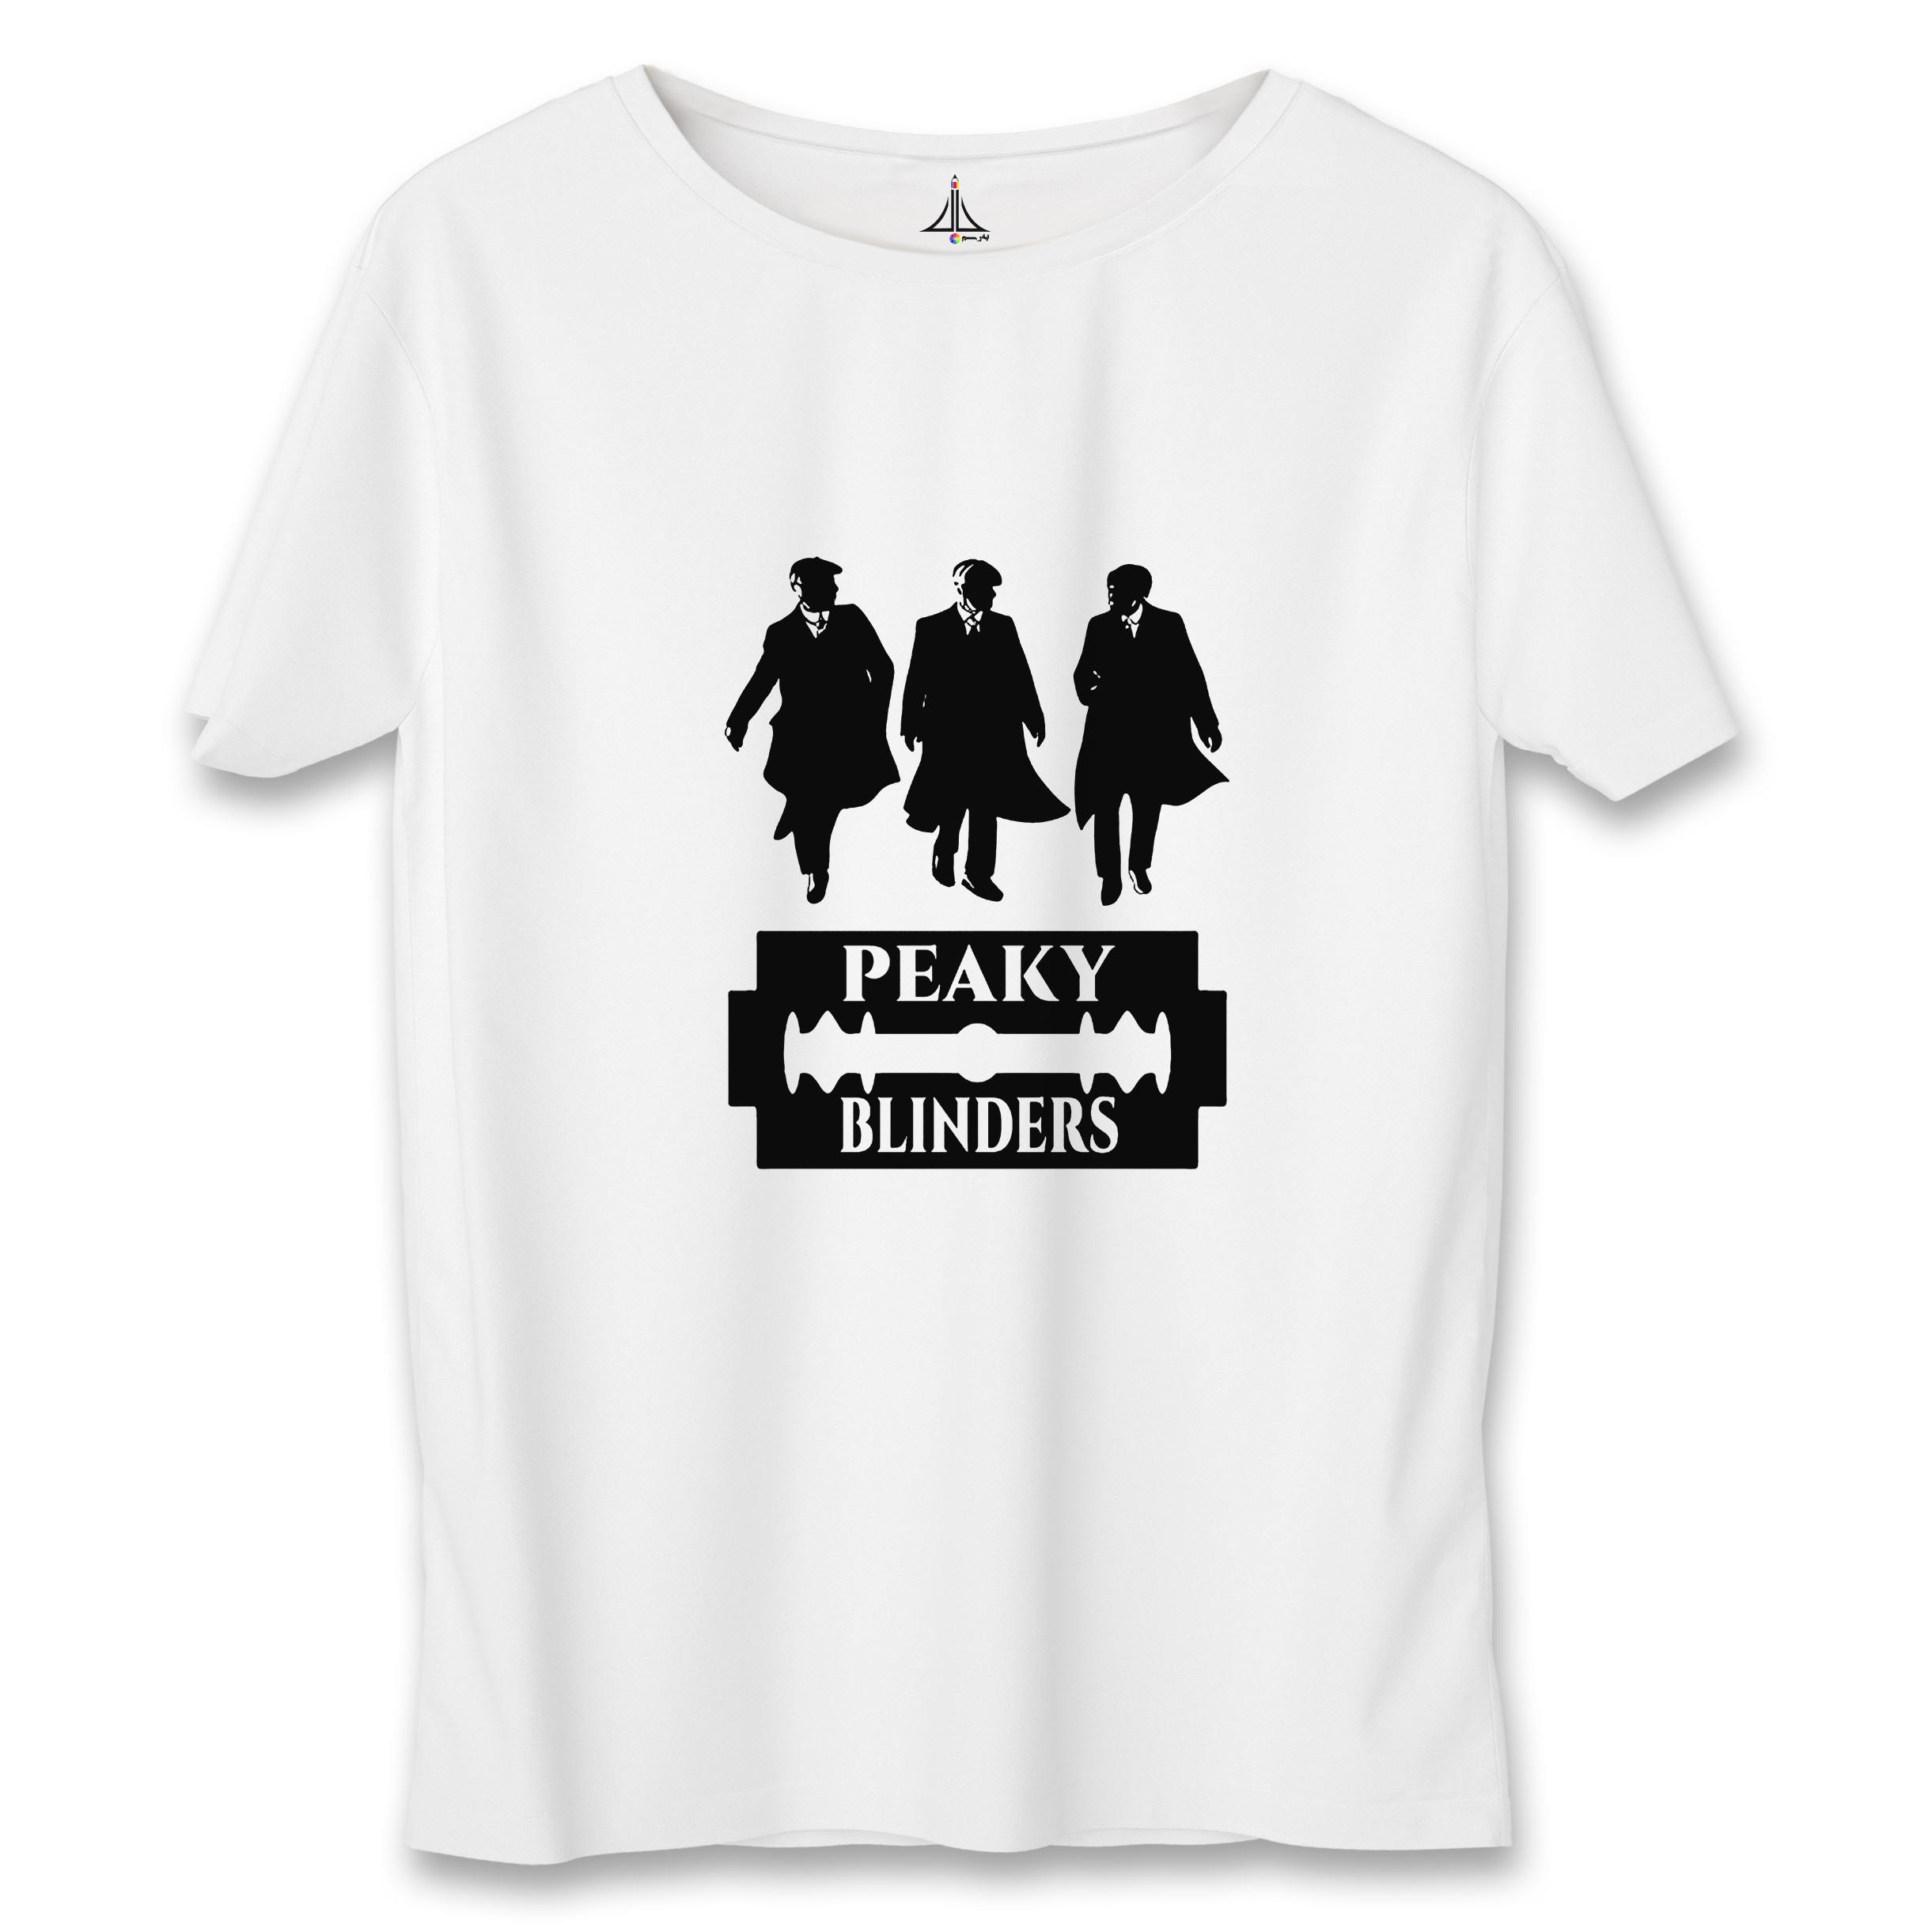 تی شرت آستین کوتاه زنانه به رسم مدل پیکی بلایندرز کد 5598